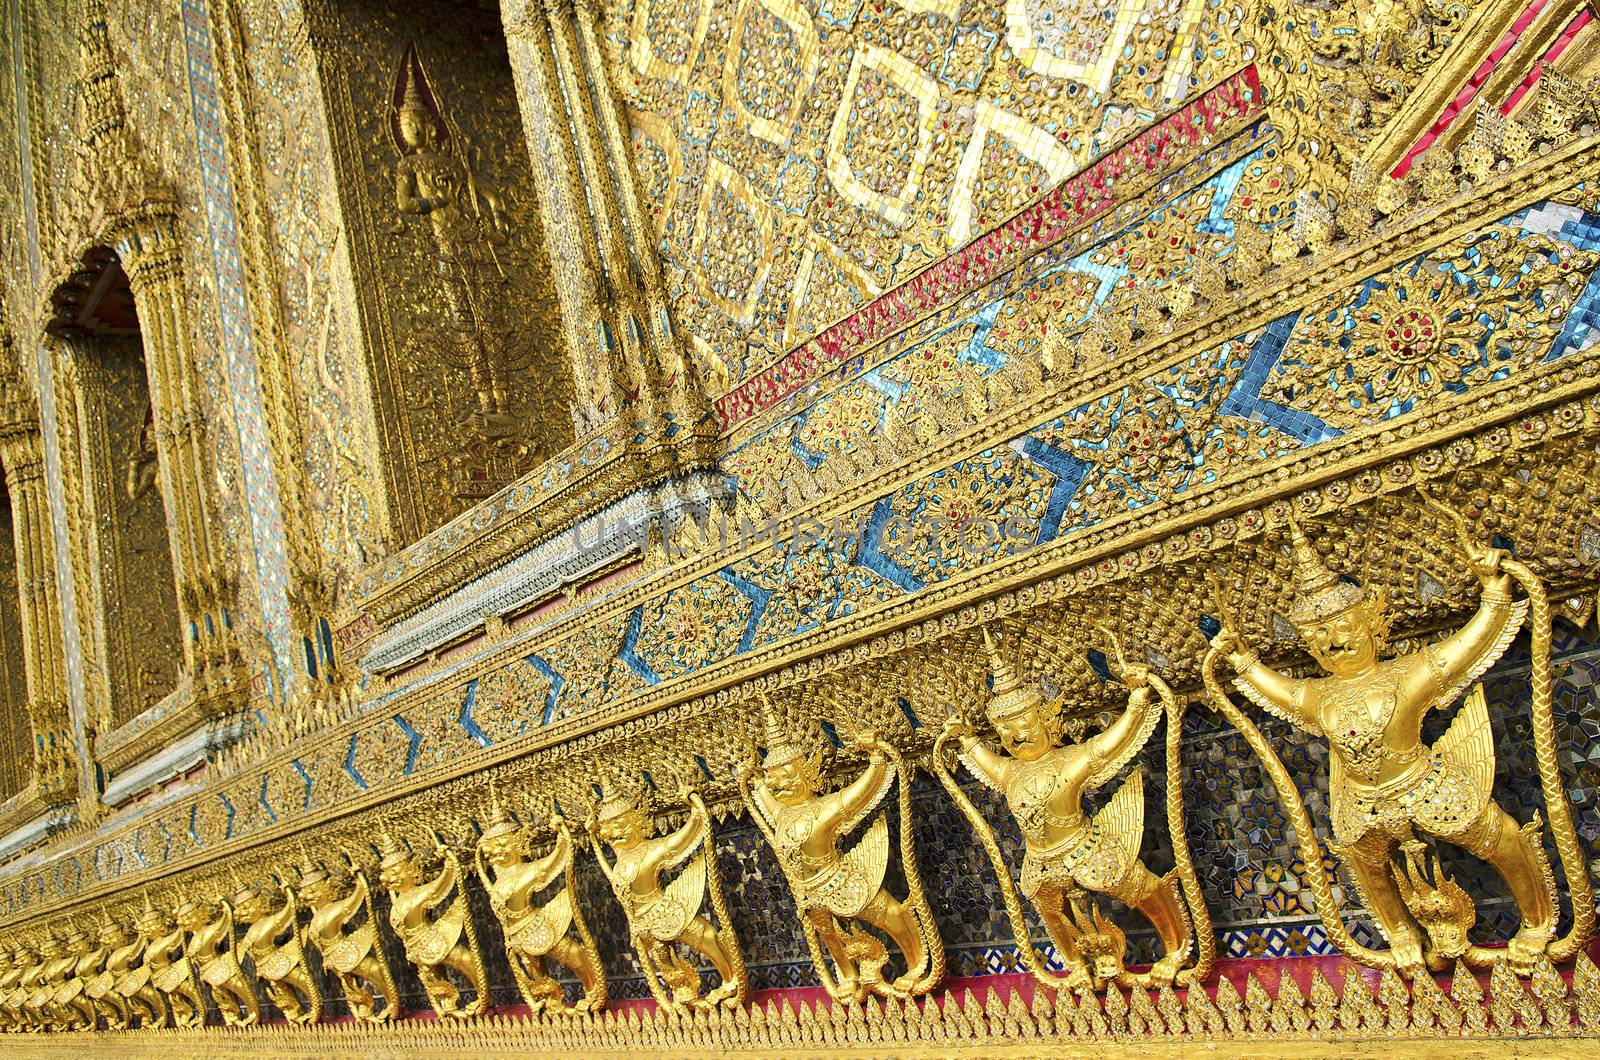 temple in grand palace bangkok thailand by jackmalipan